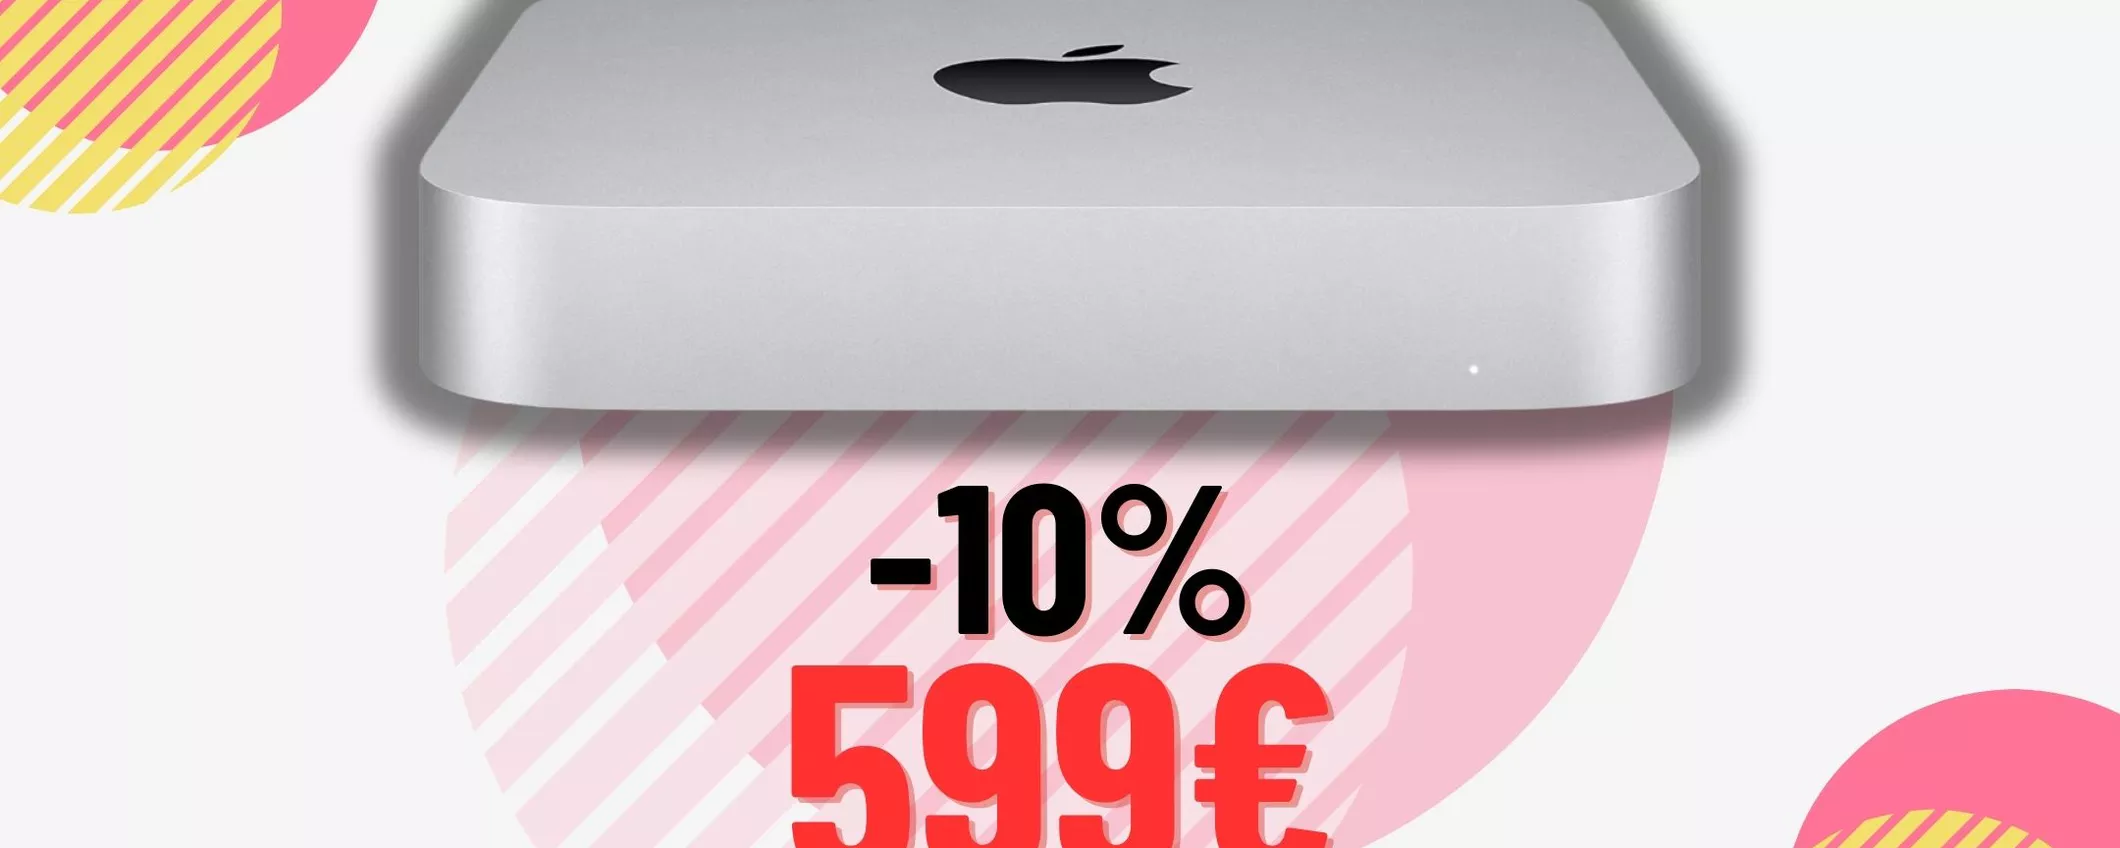 Mac Mini: il meglio della Apple oggi costa 100€ in meno!